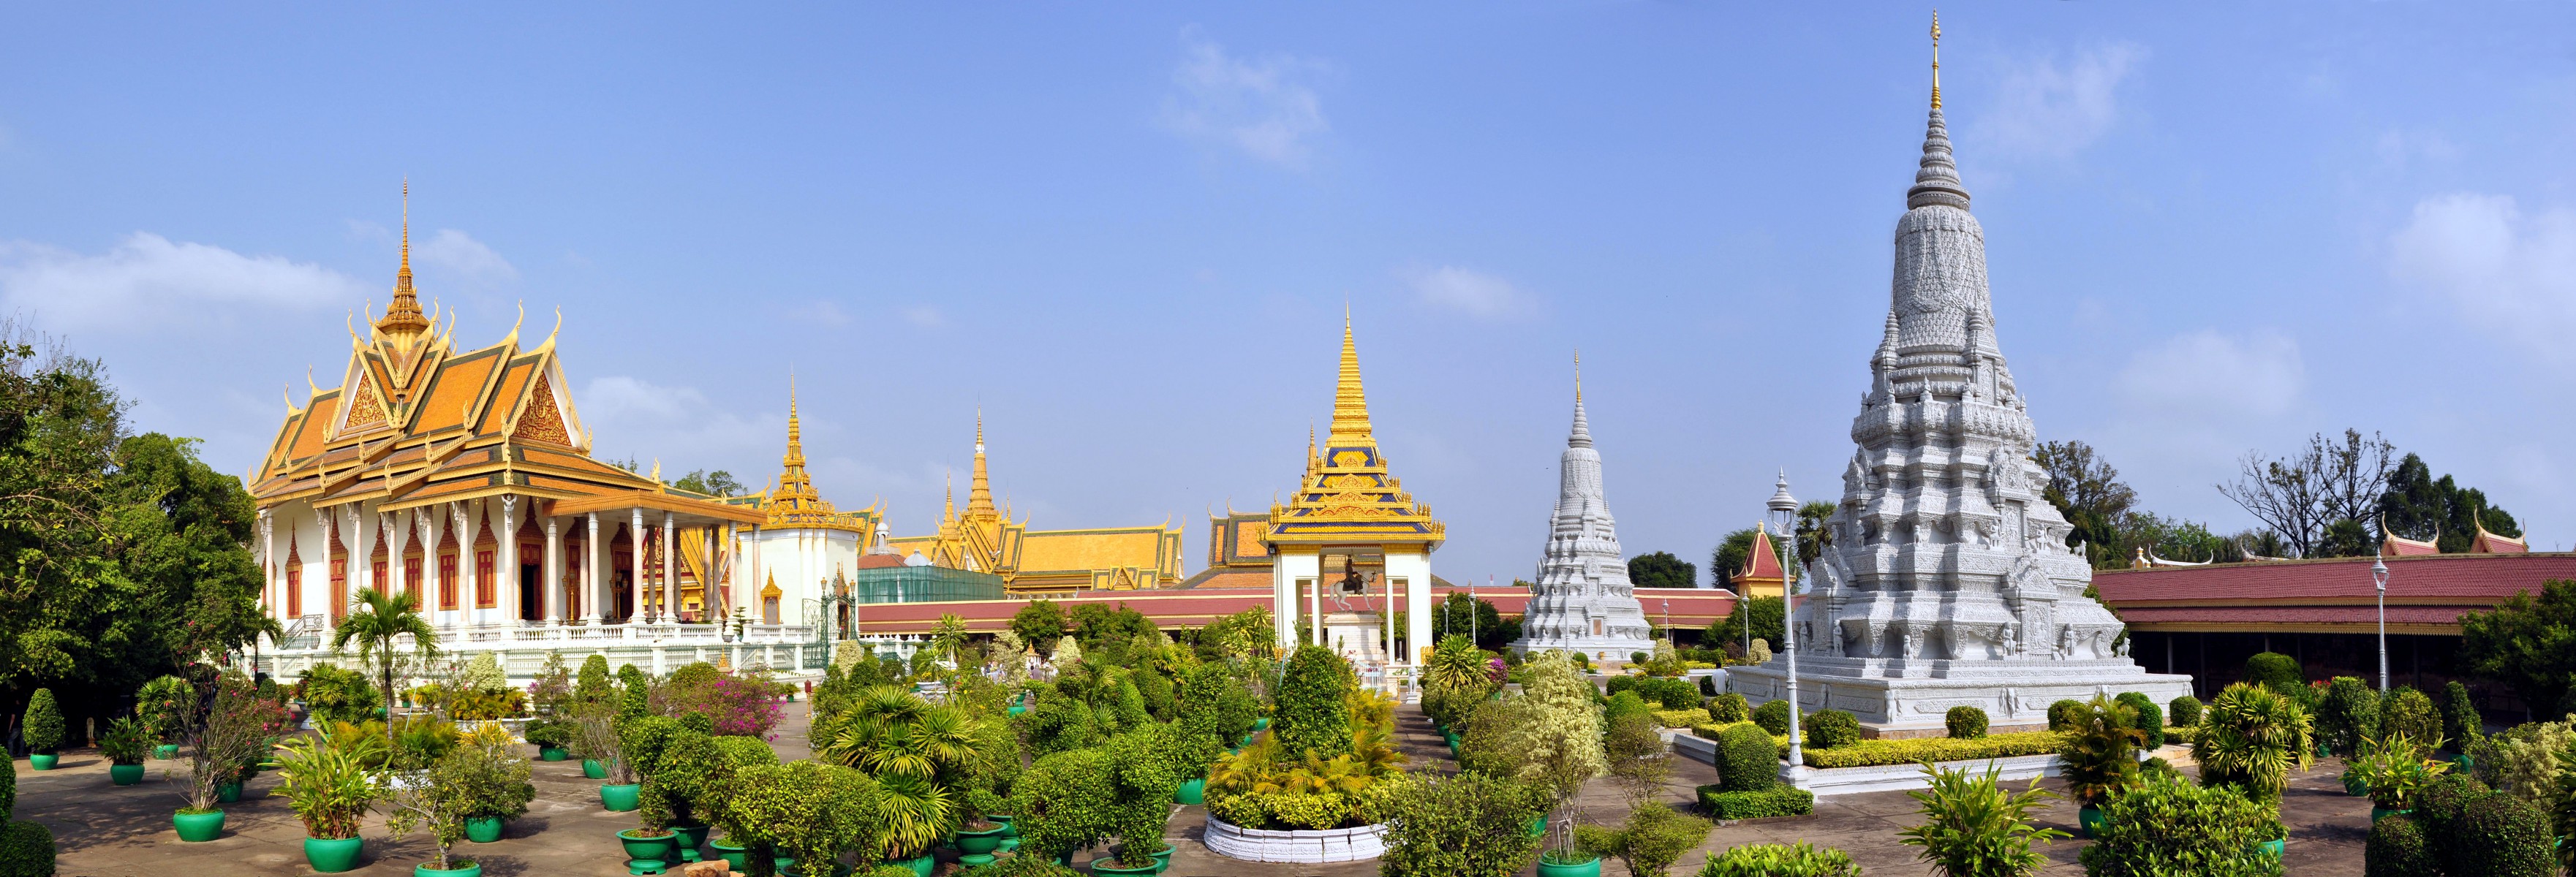 Images of Royal Palace, Phnom Penh | 3523x1200